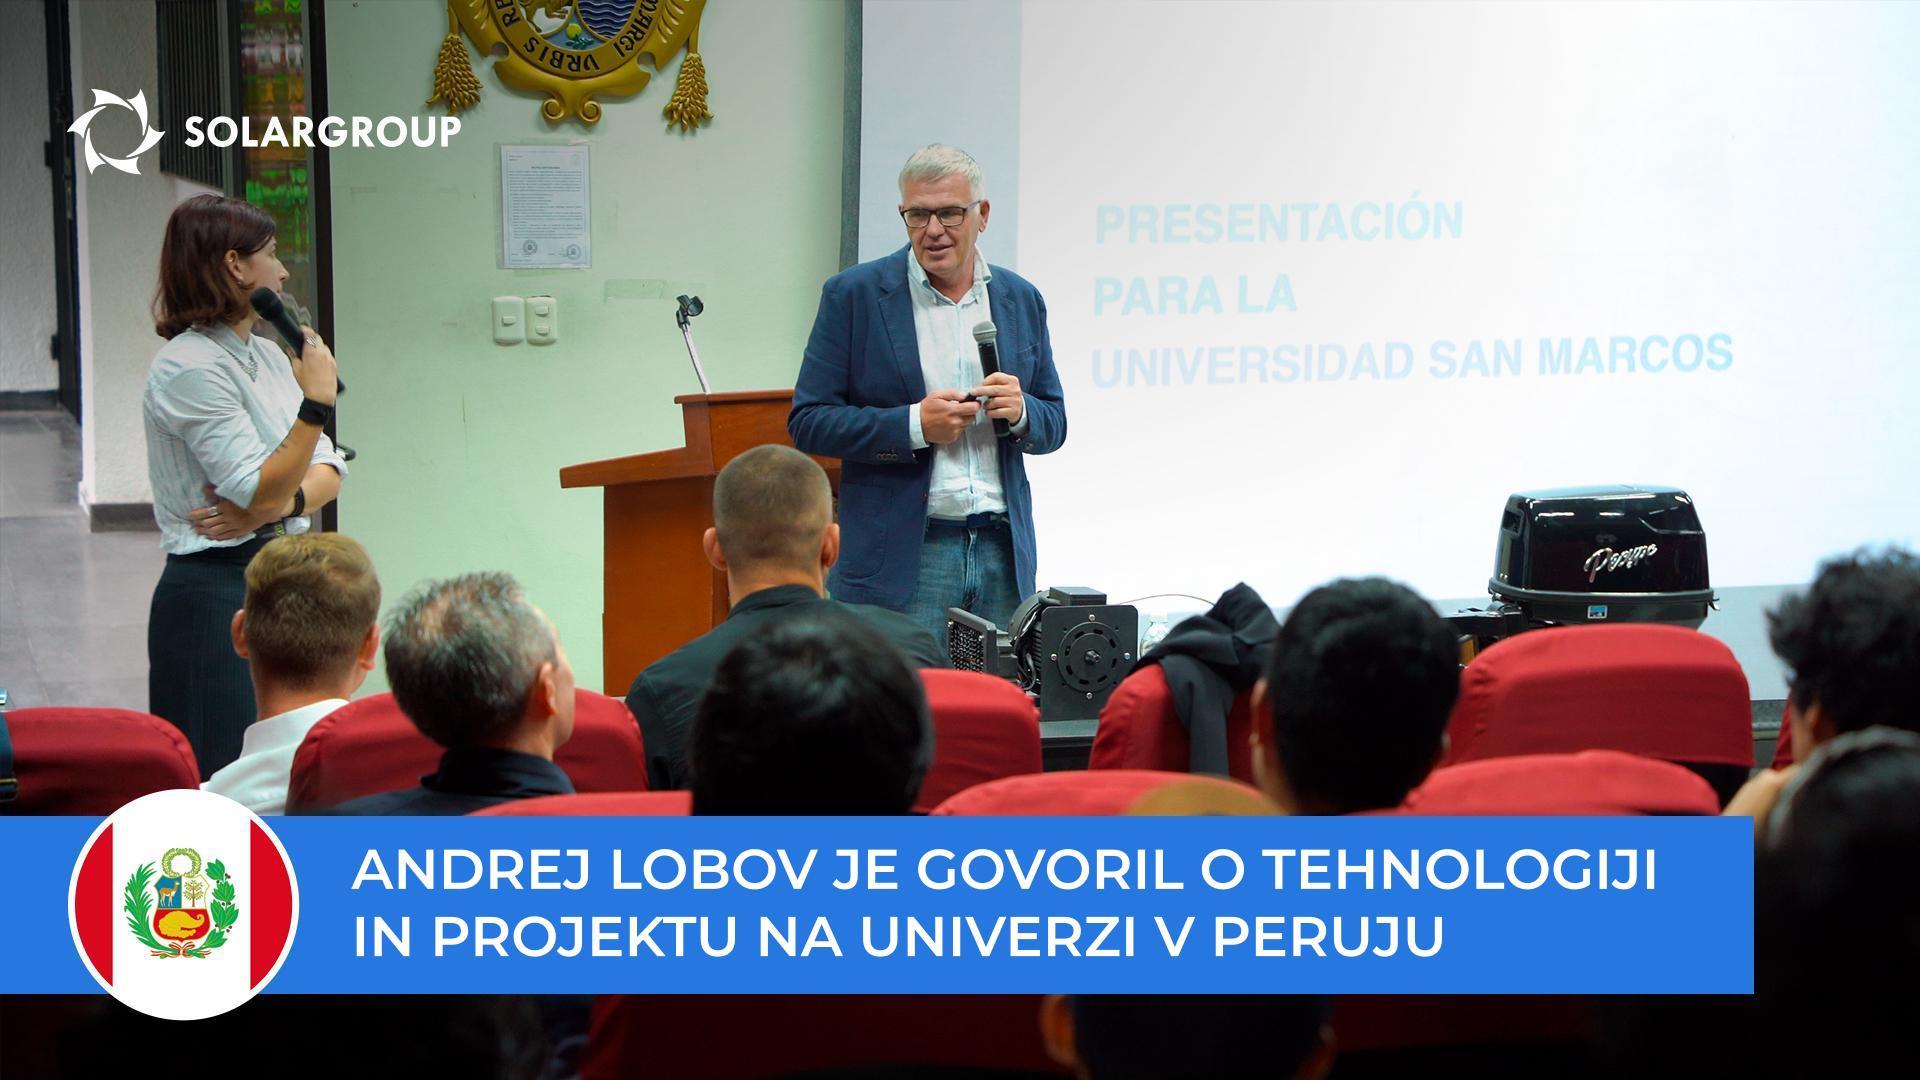 Andrej Lobov je o tehnologiji in projektu spregovoril študentom in profesorjem univerze San Marcos